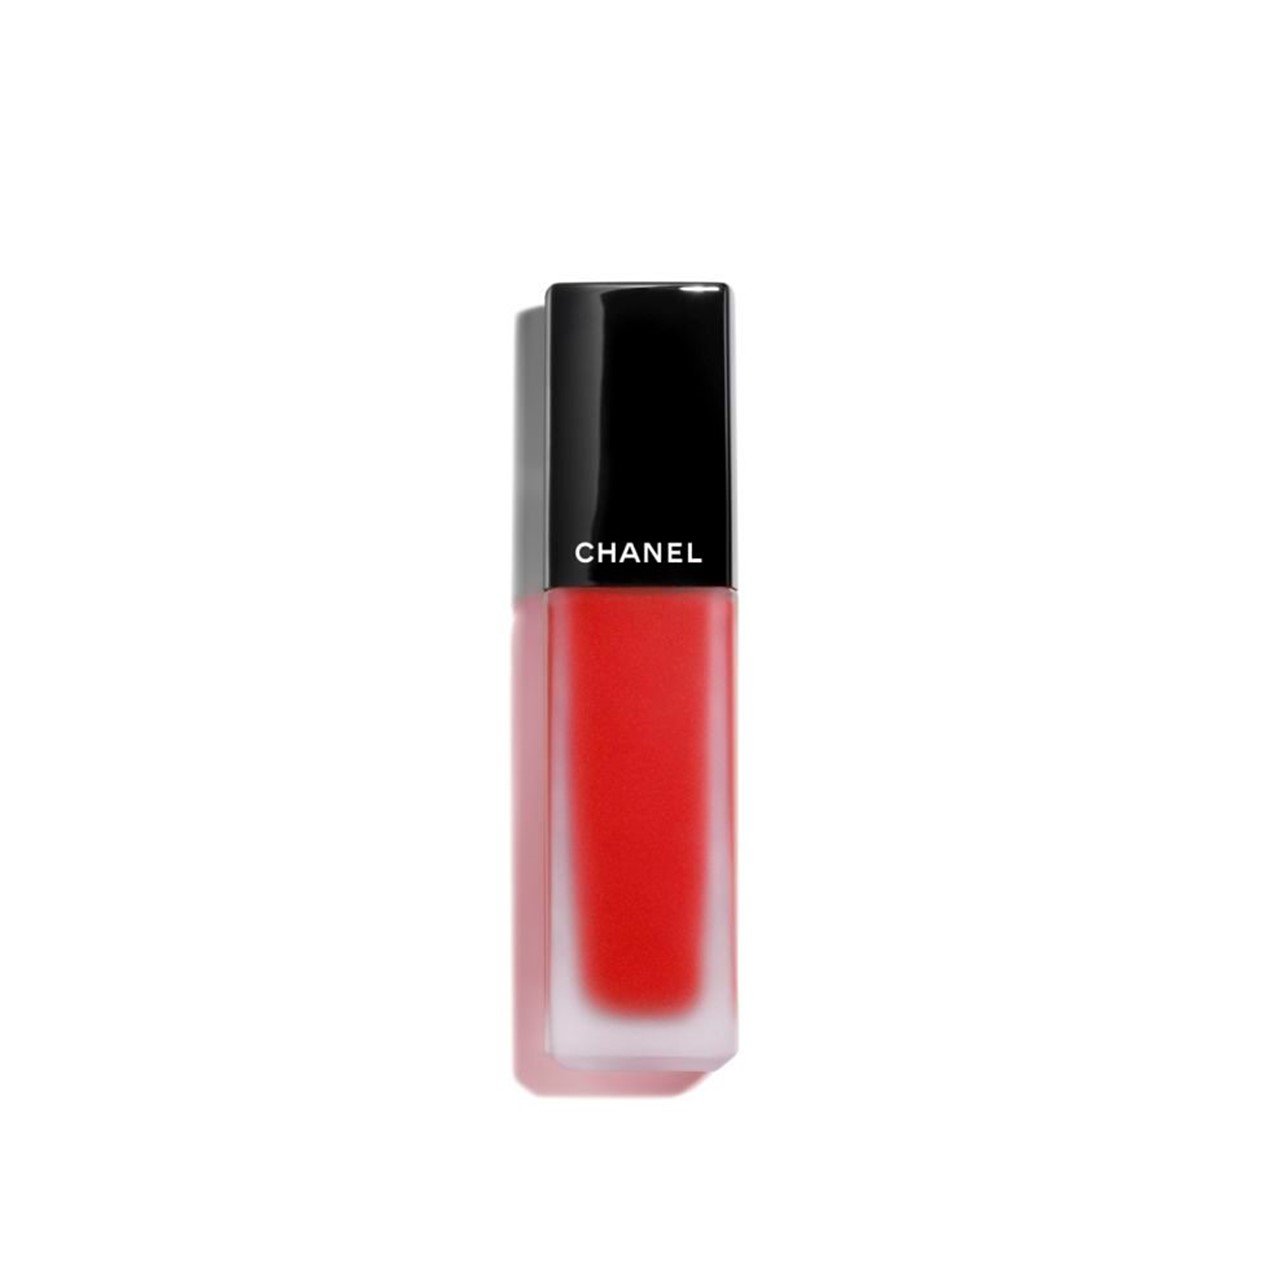 CHANEL Rouge Allure Ink Matte Liquid Lip Colour 222 6ml